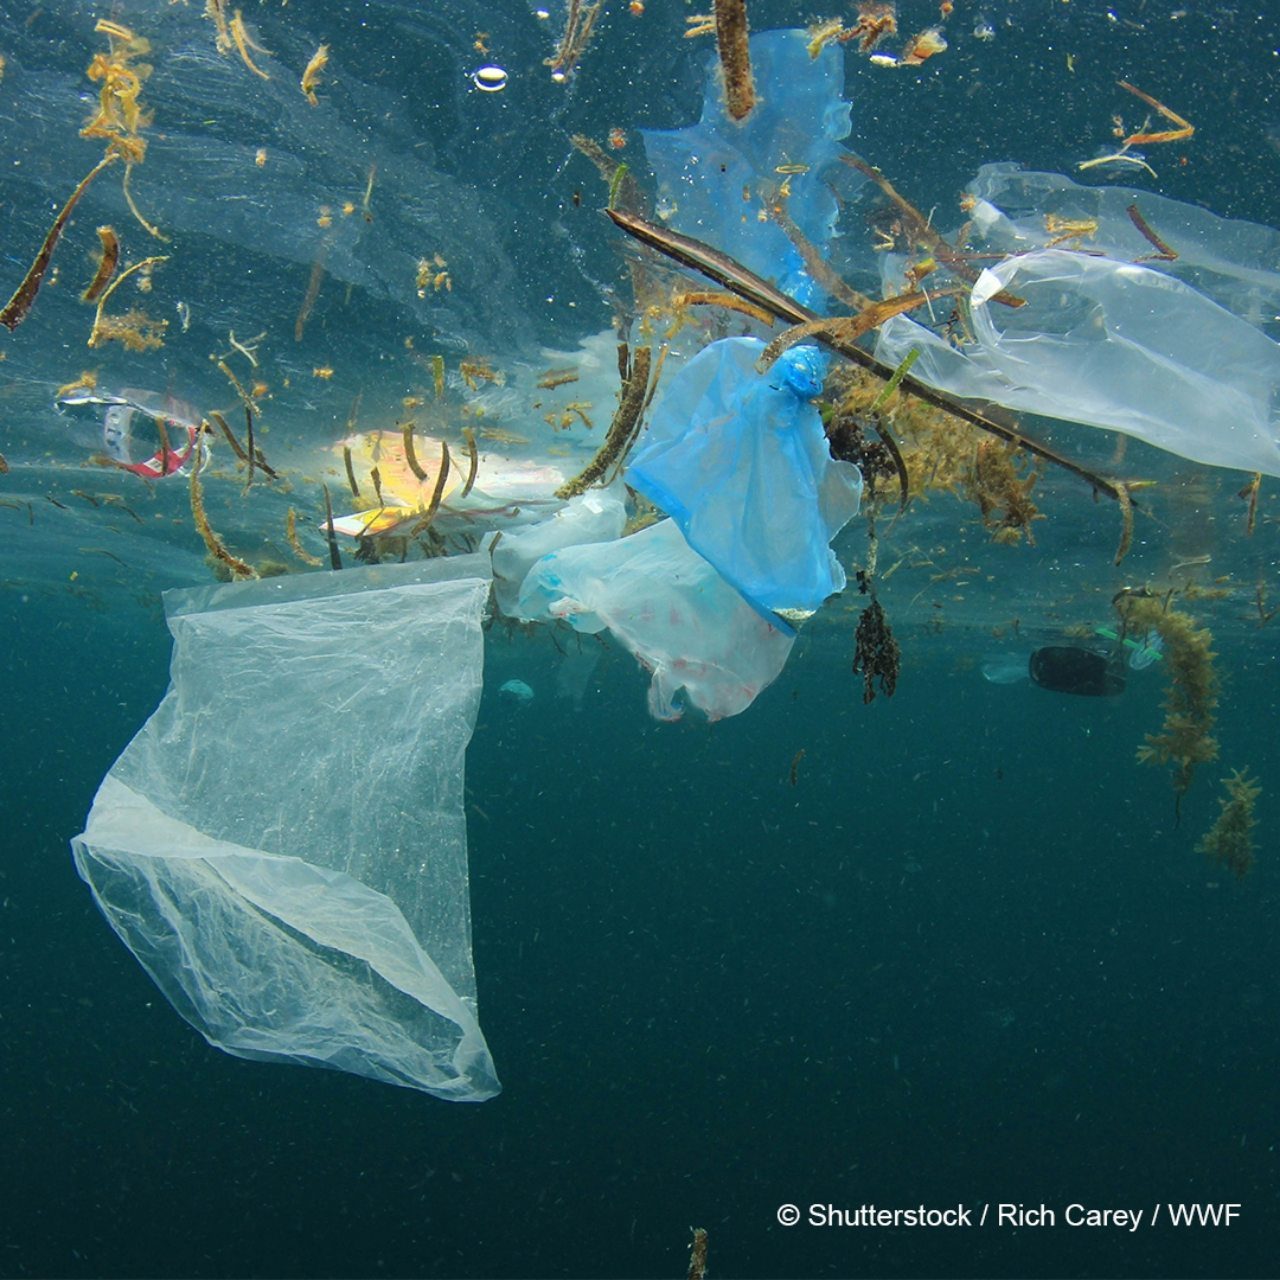 Sat za planetu: Skini se sa plastike, navuci se na prirodu!